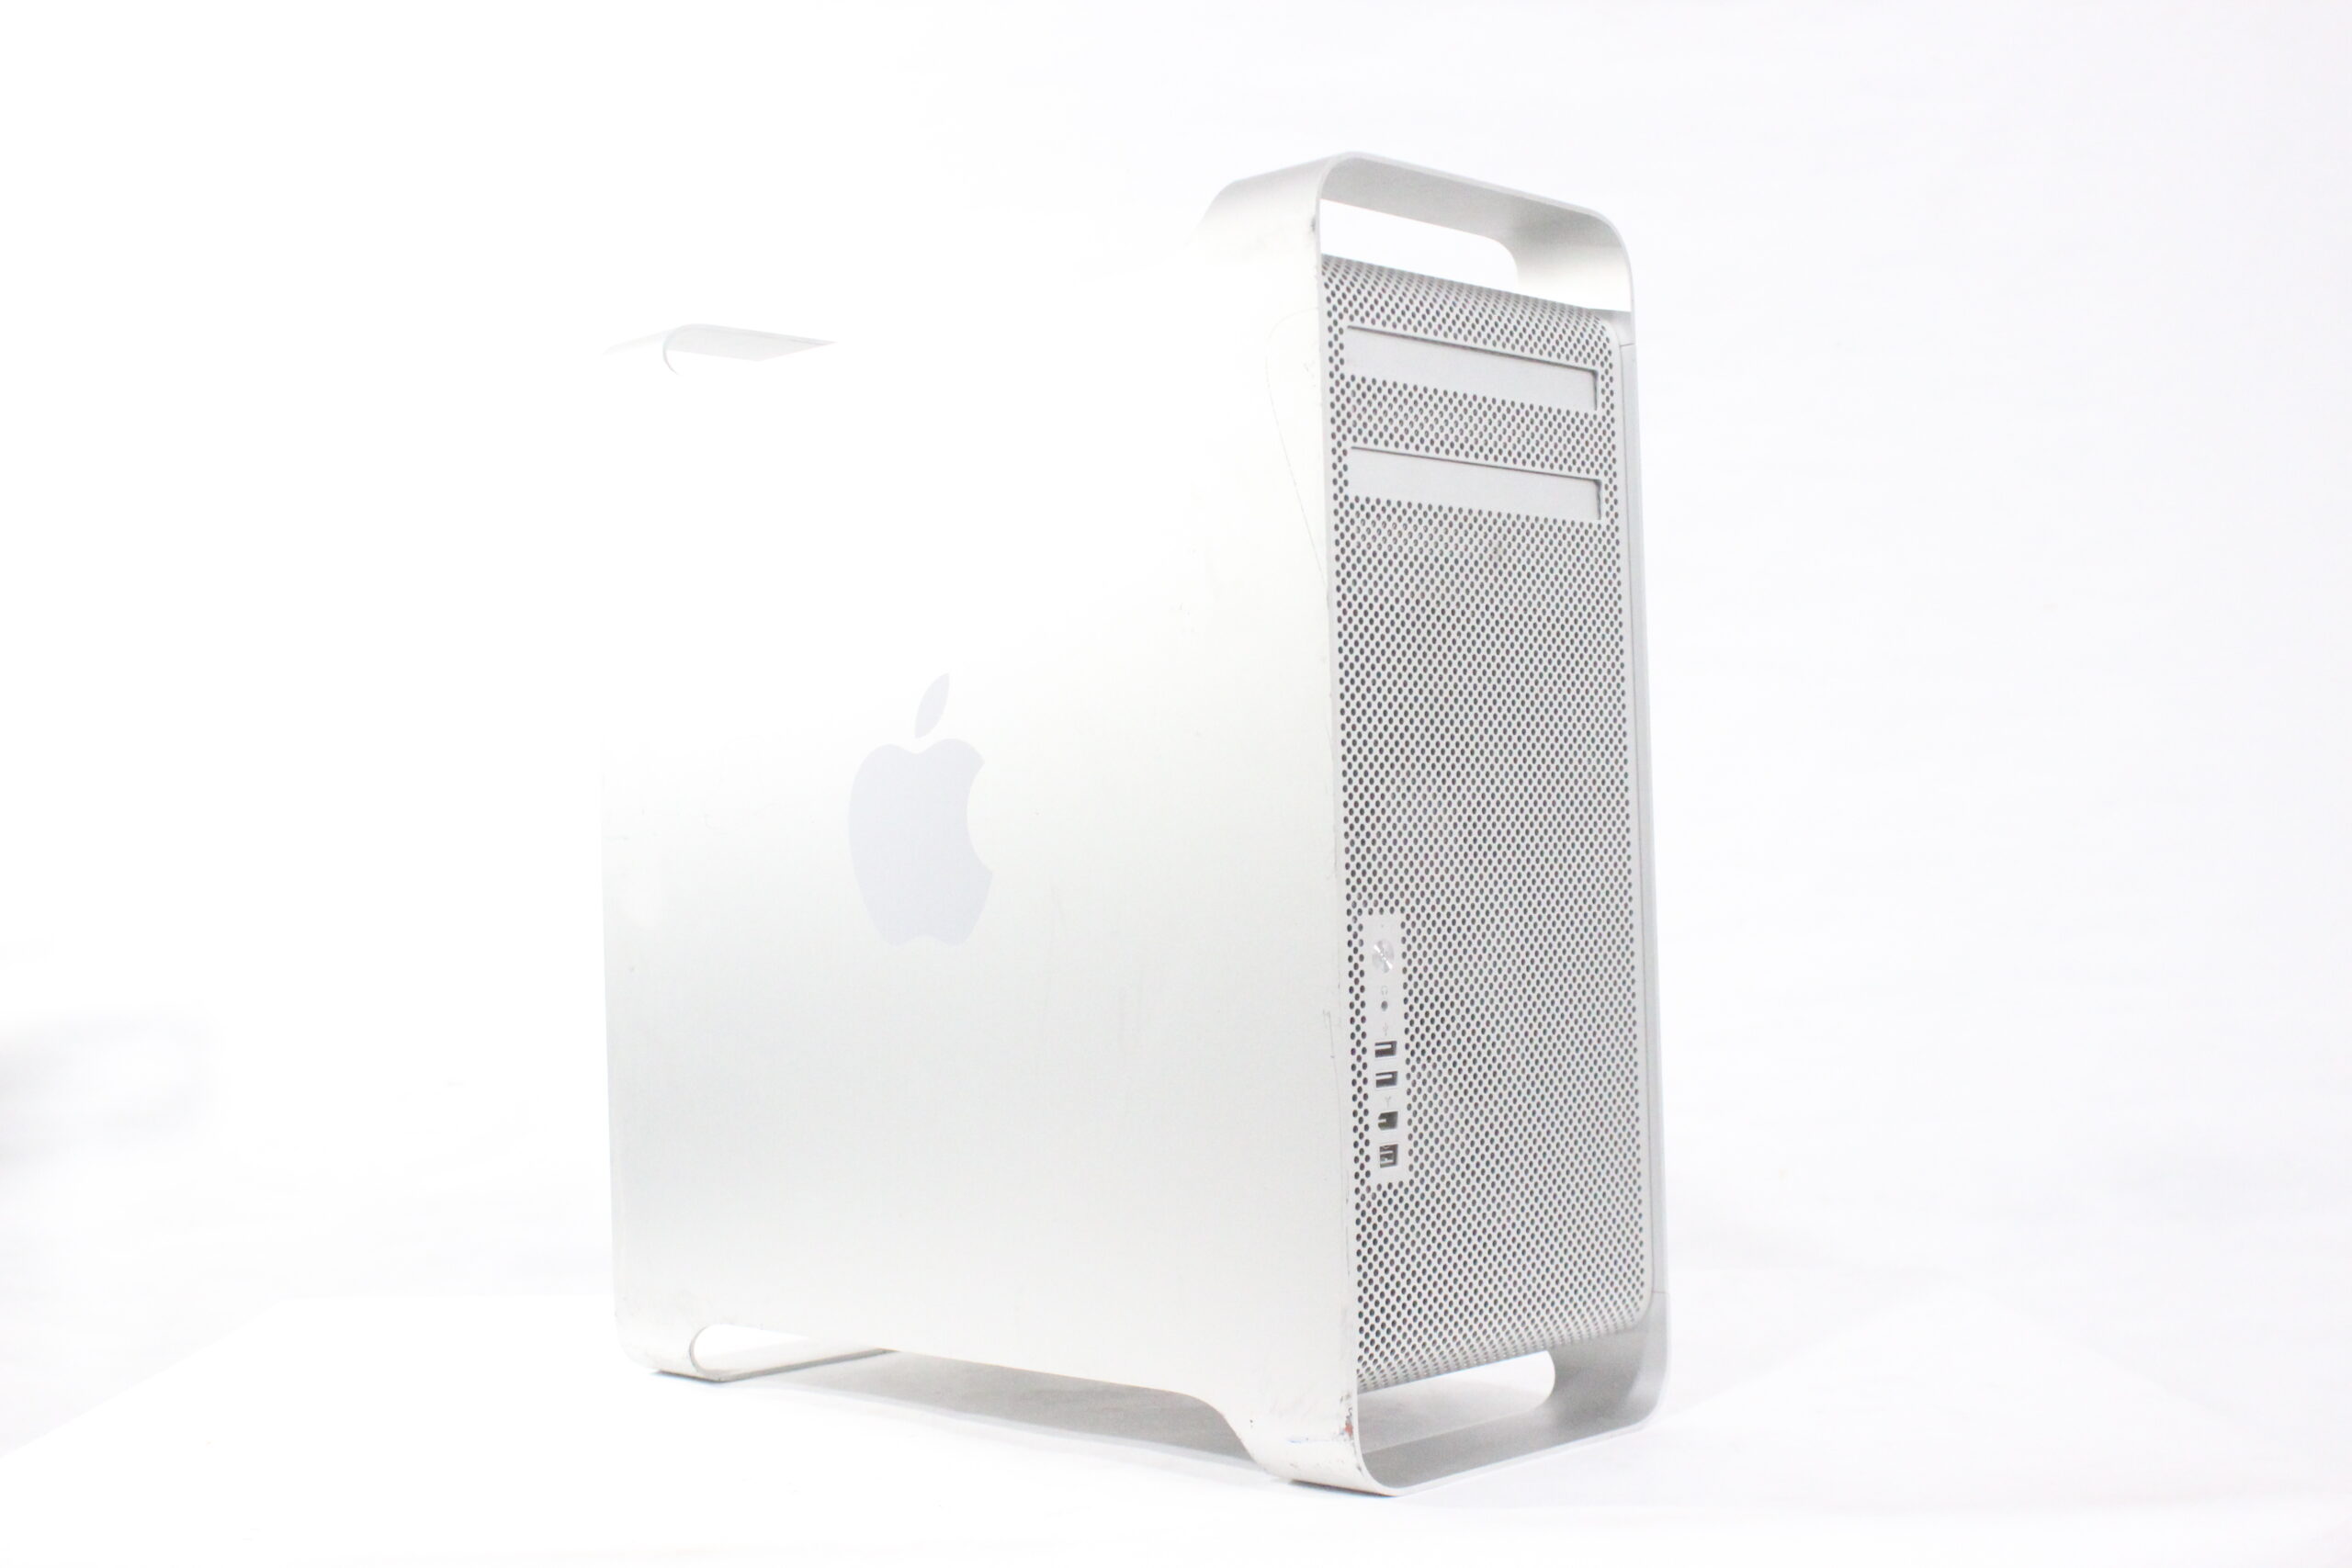 Mac pro A1186 - Macデスクトップ